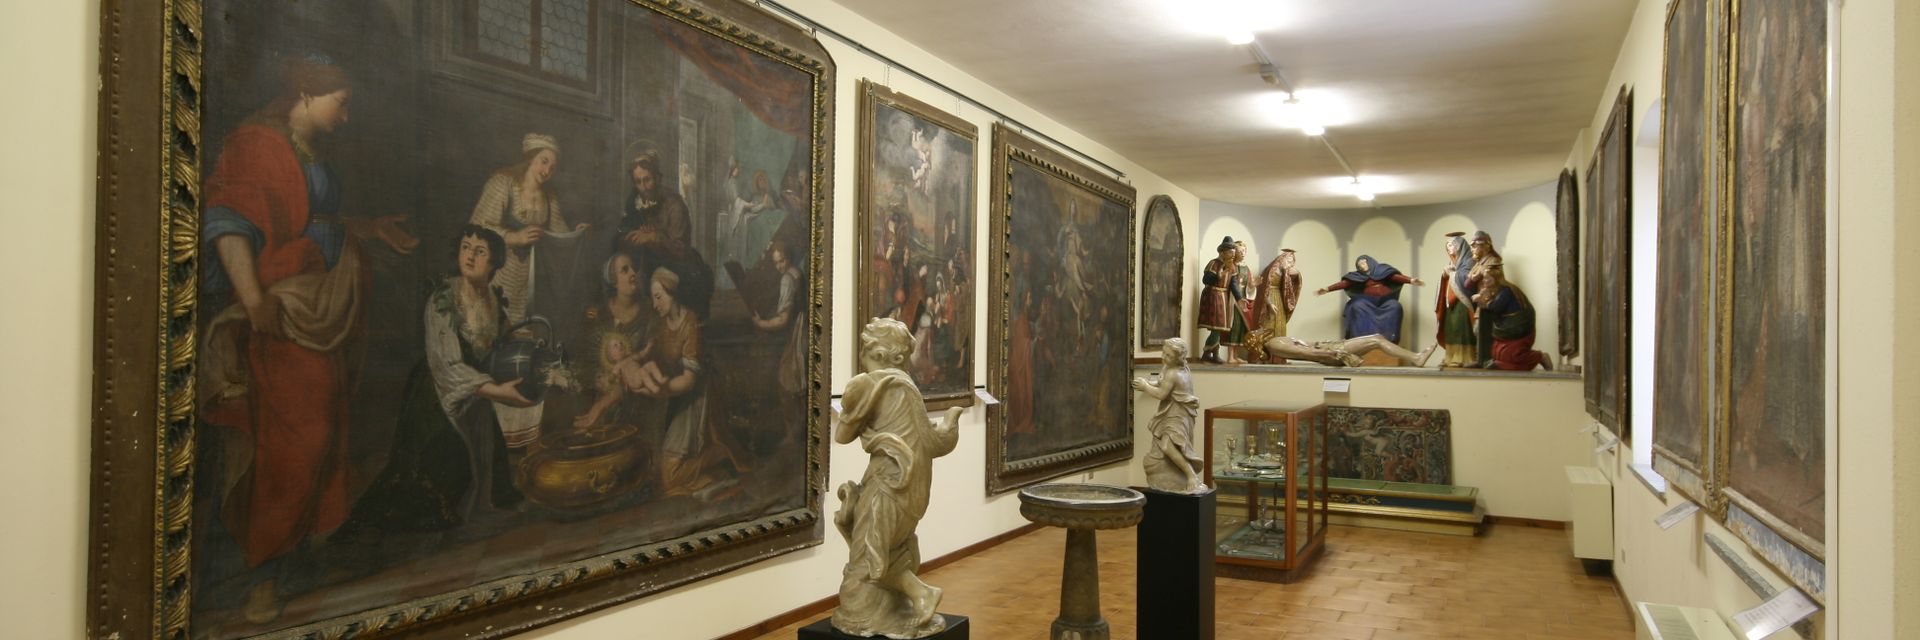 Parish Museum of Sacred Art of Ornavasso